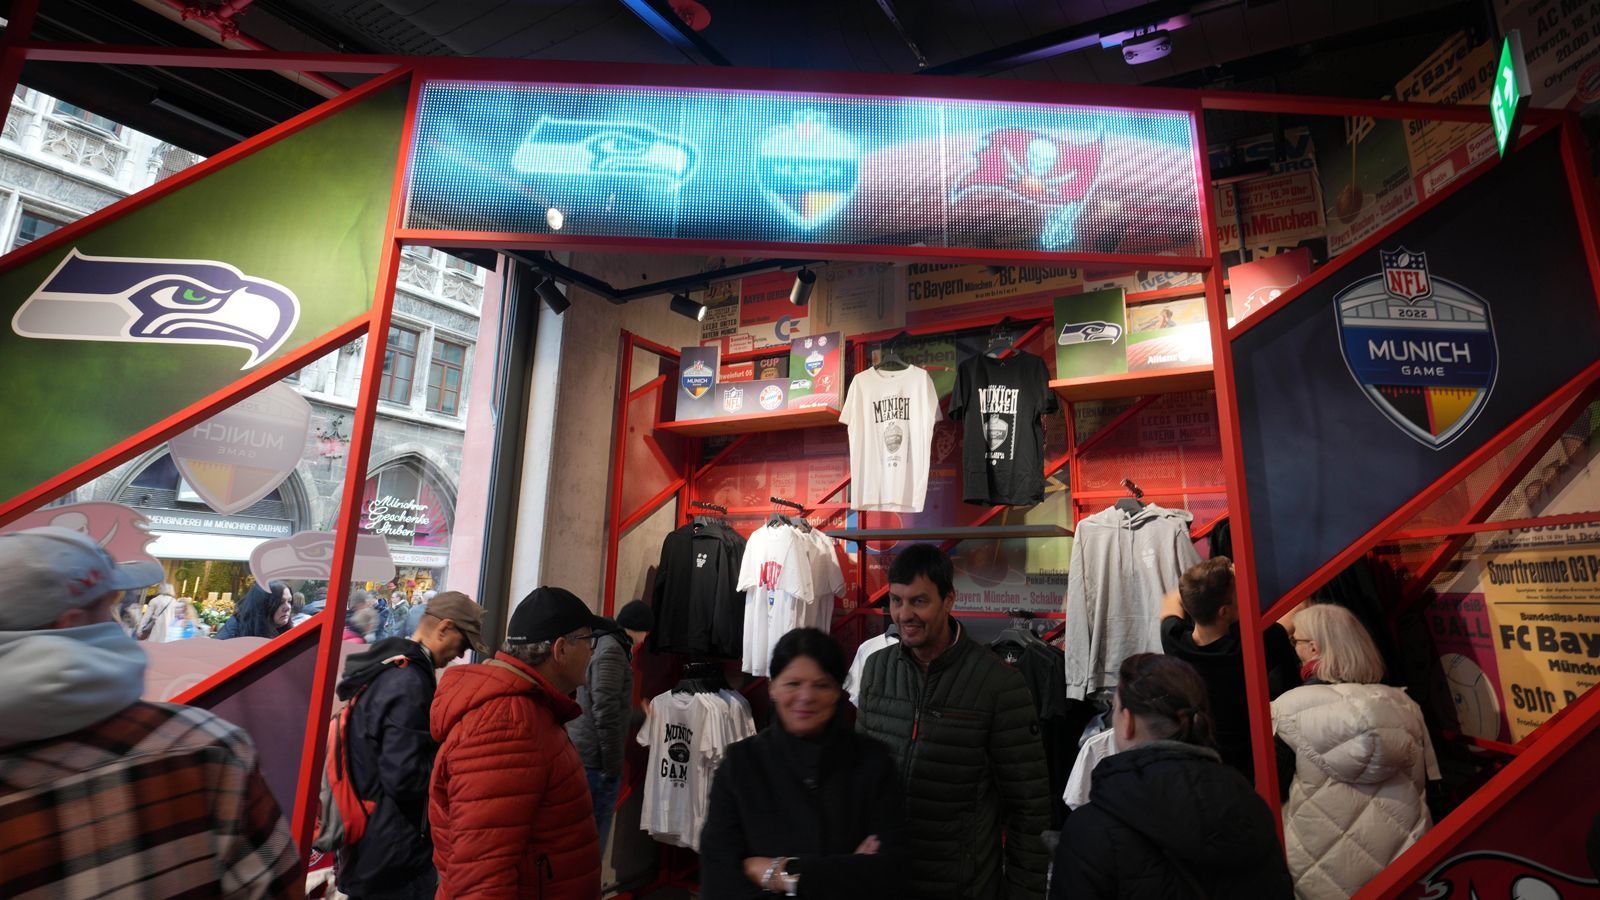 
                <strong>NFL-Shop am Odeonsplatz</strong><br>
                Am Odeonsplatz wurde ebenfalls eigens für das Munich Game ein NFL-Fanshop eingerichtet. Fans konnten sich dort Merchandising-Produkte ihrer Lieblingsteams und viele weitere Football-Artikel kaufen.
              